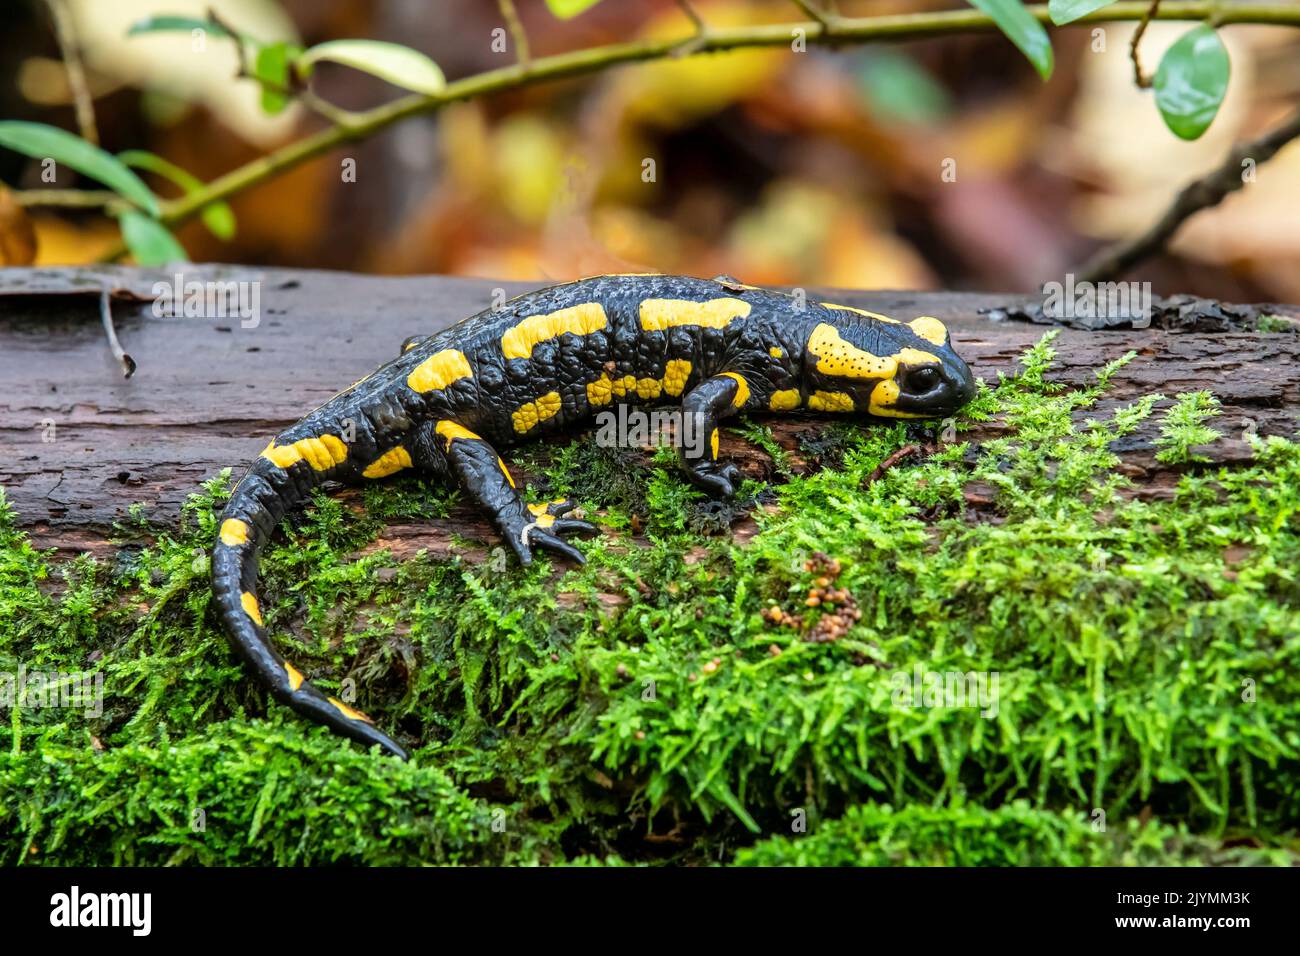 Fire salamander (Salamandra salamandra) on the ground in the undergrowth in autumn, Massif de la Forêt de la Reine, Environs de Toul, Meurthe-et-Moselle, France Stock Photo